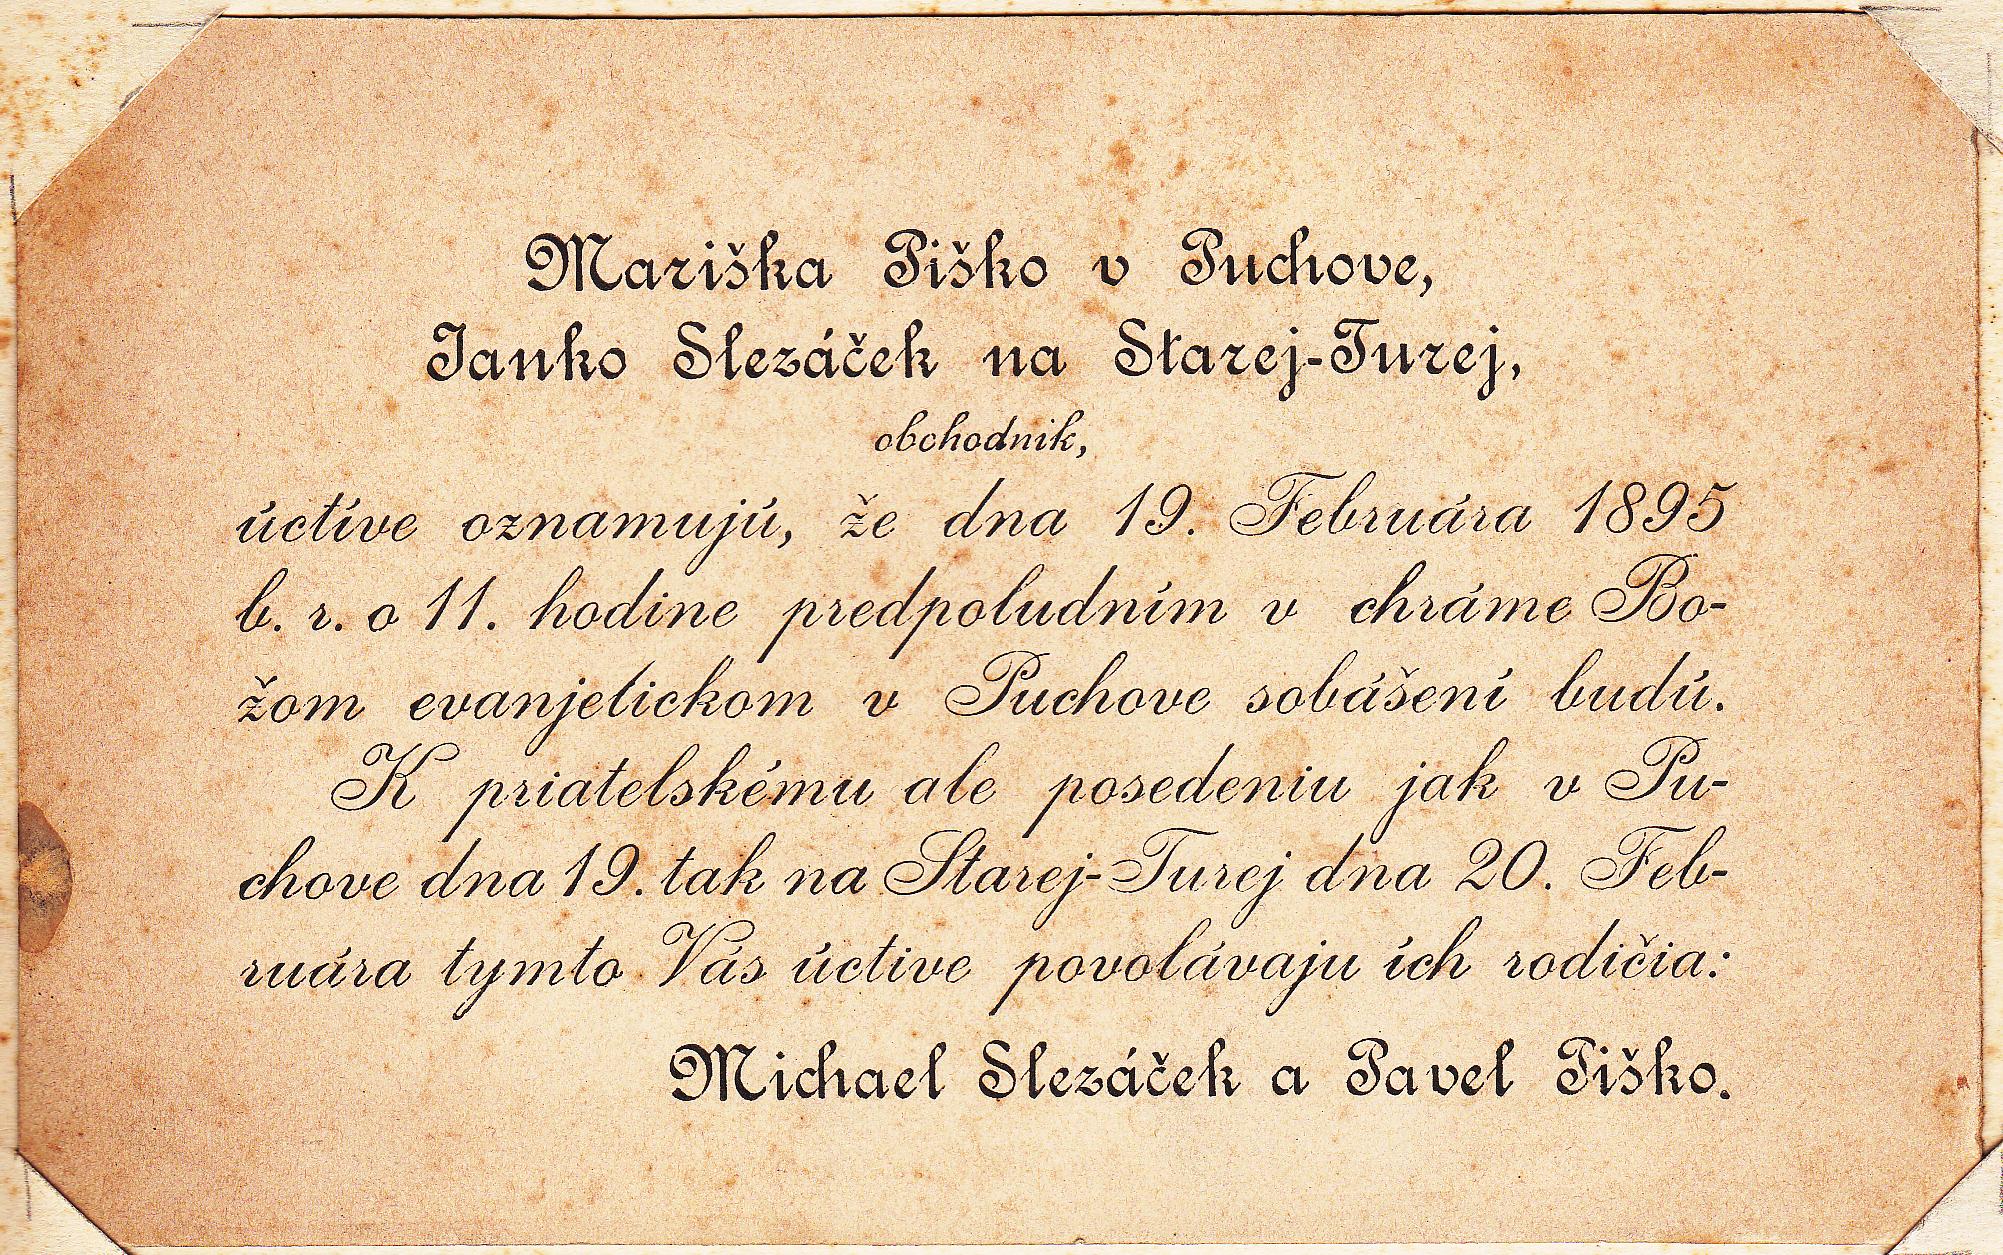 Svadobné oznámenie Márie Piškovej z Púchova a Janka Slezáčka zo Starej Turej z r. 1895 v slovenčine